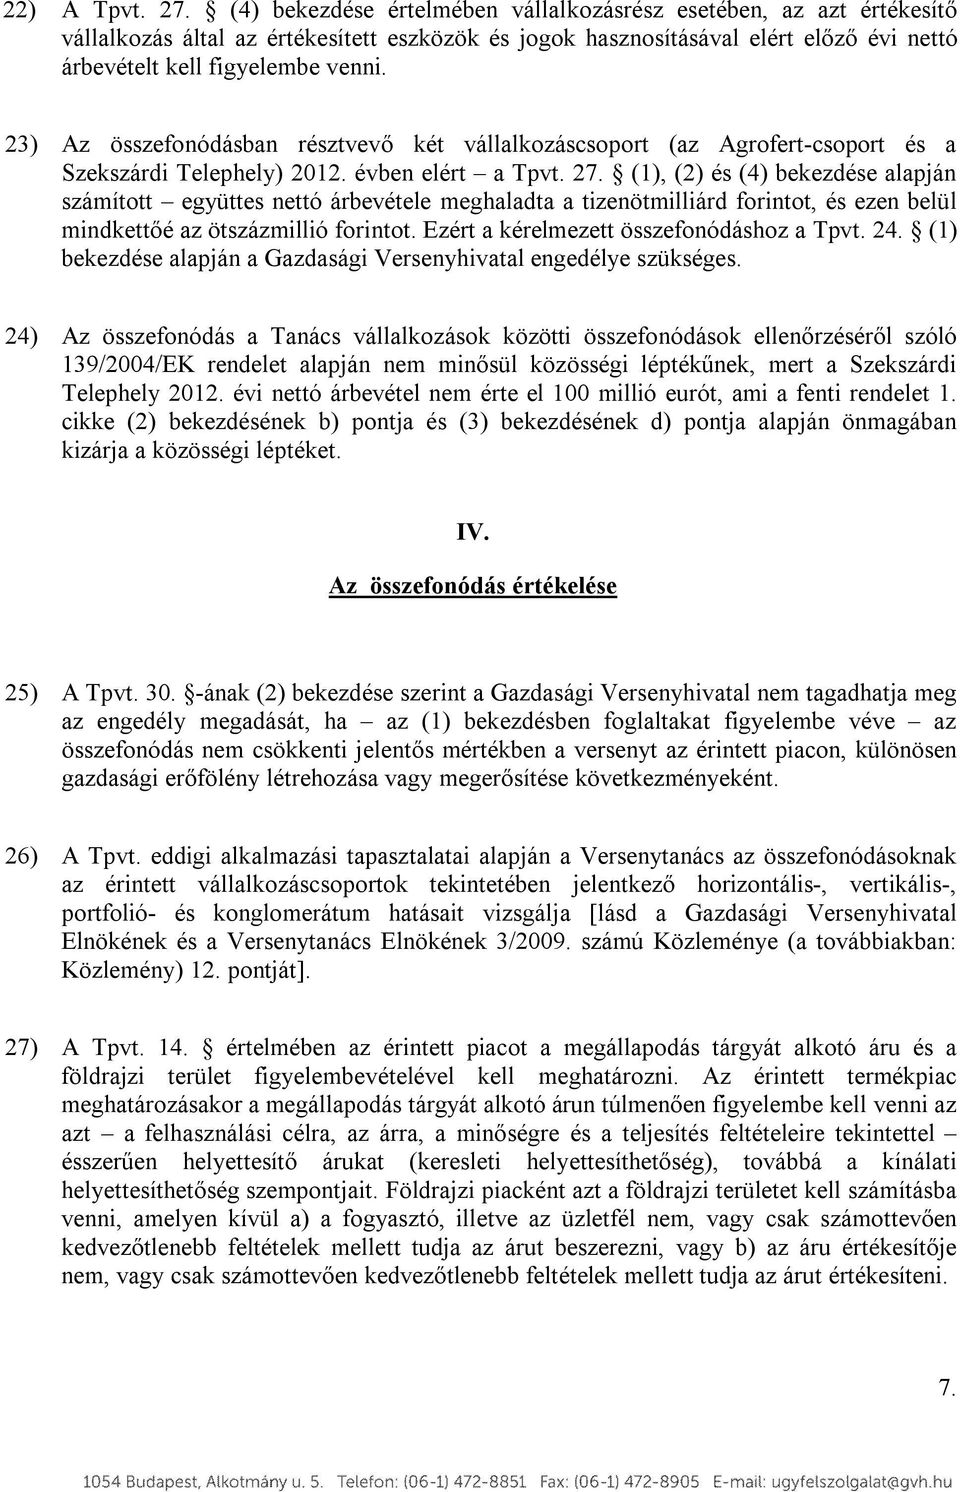 23) Az összefonódásban résztvevő két vállalkozáscsoport (az Agrofert-csoport és a Szekszárdi Telephely) 2012. évben elért a Tpvt. 27.